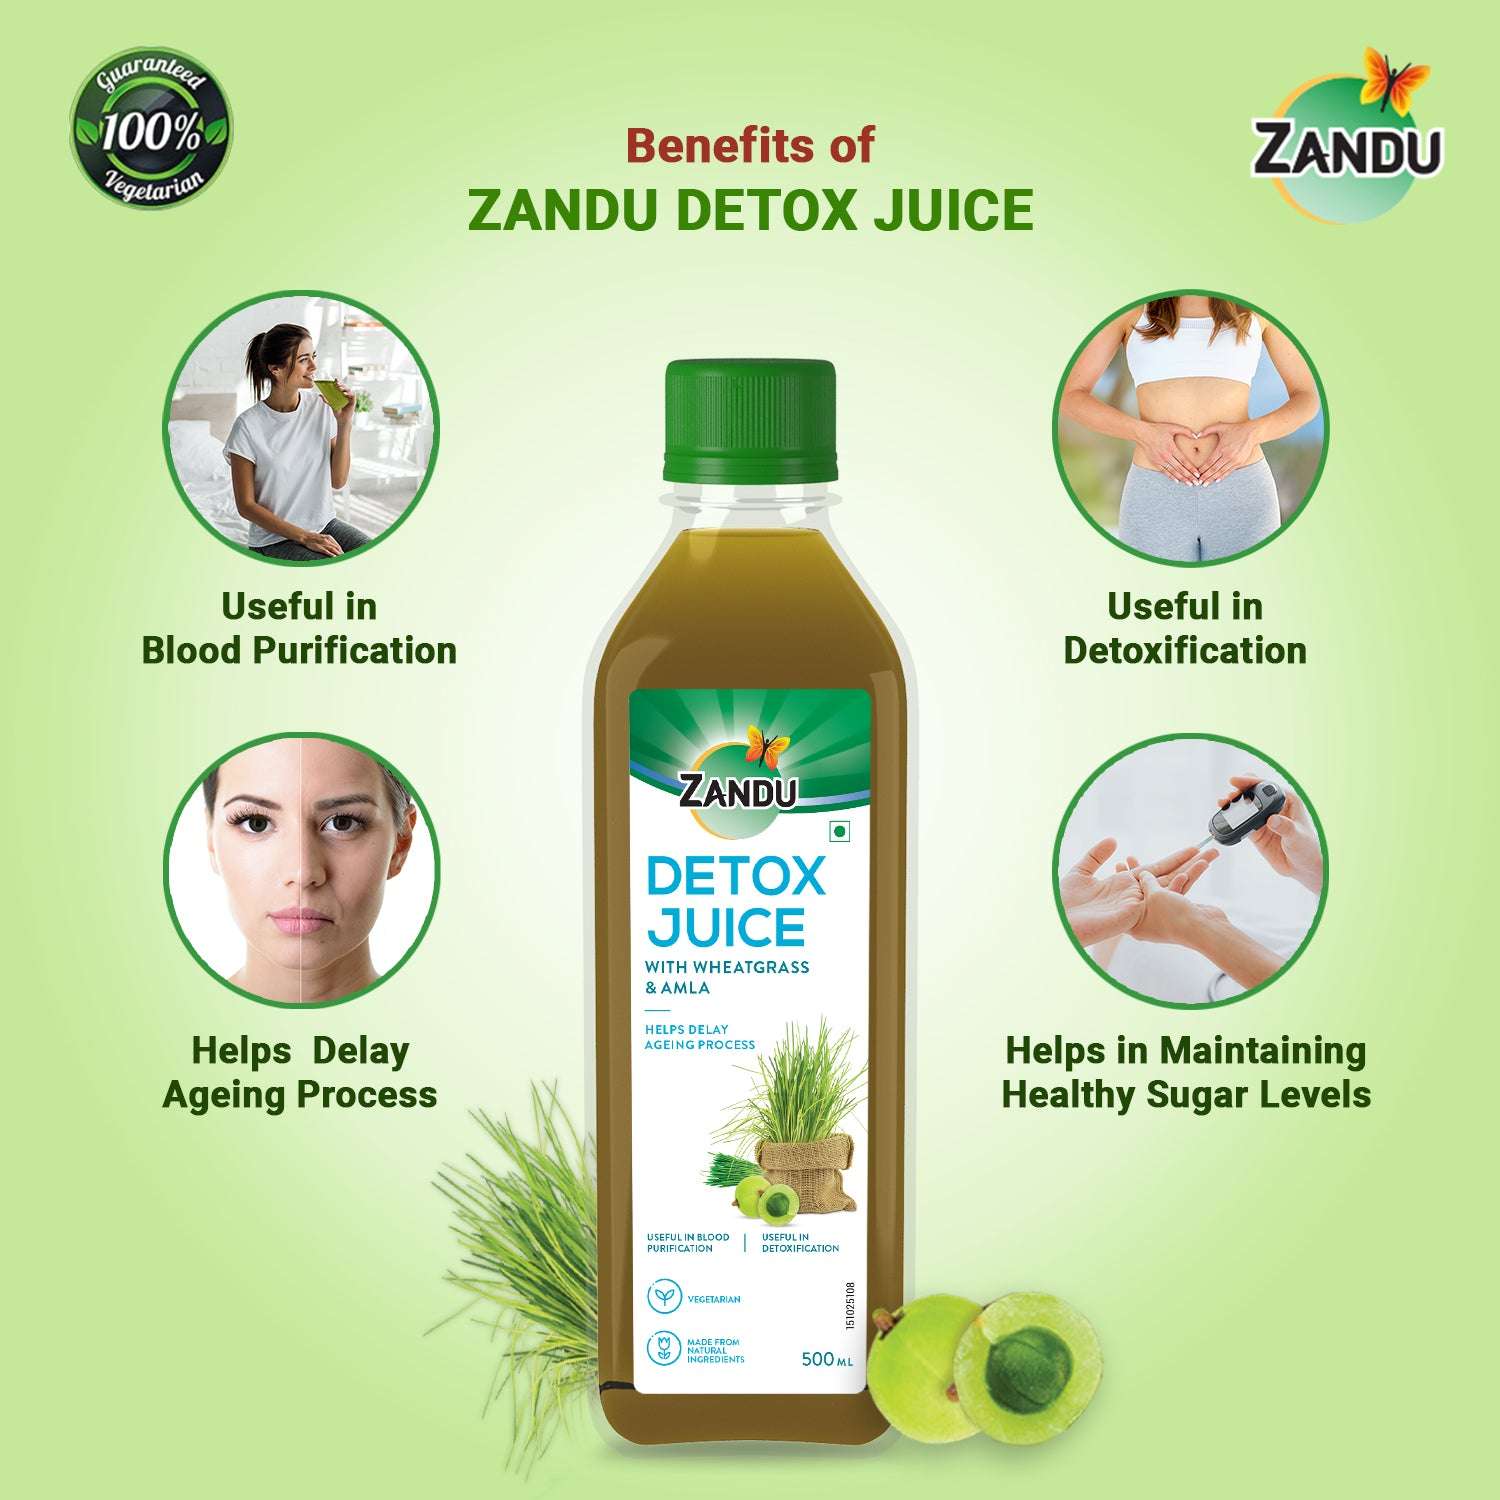 Zandu Detox Juice Benefits